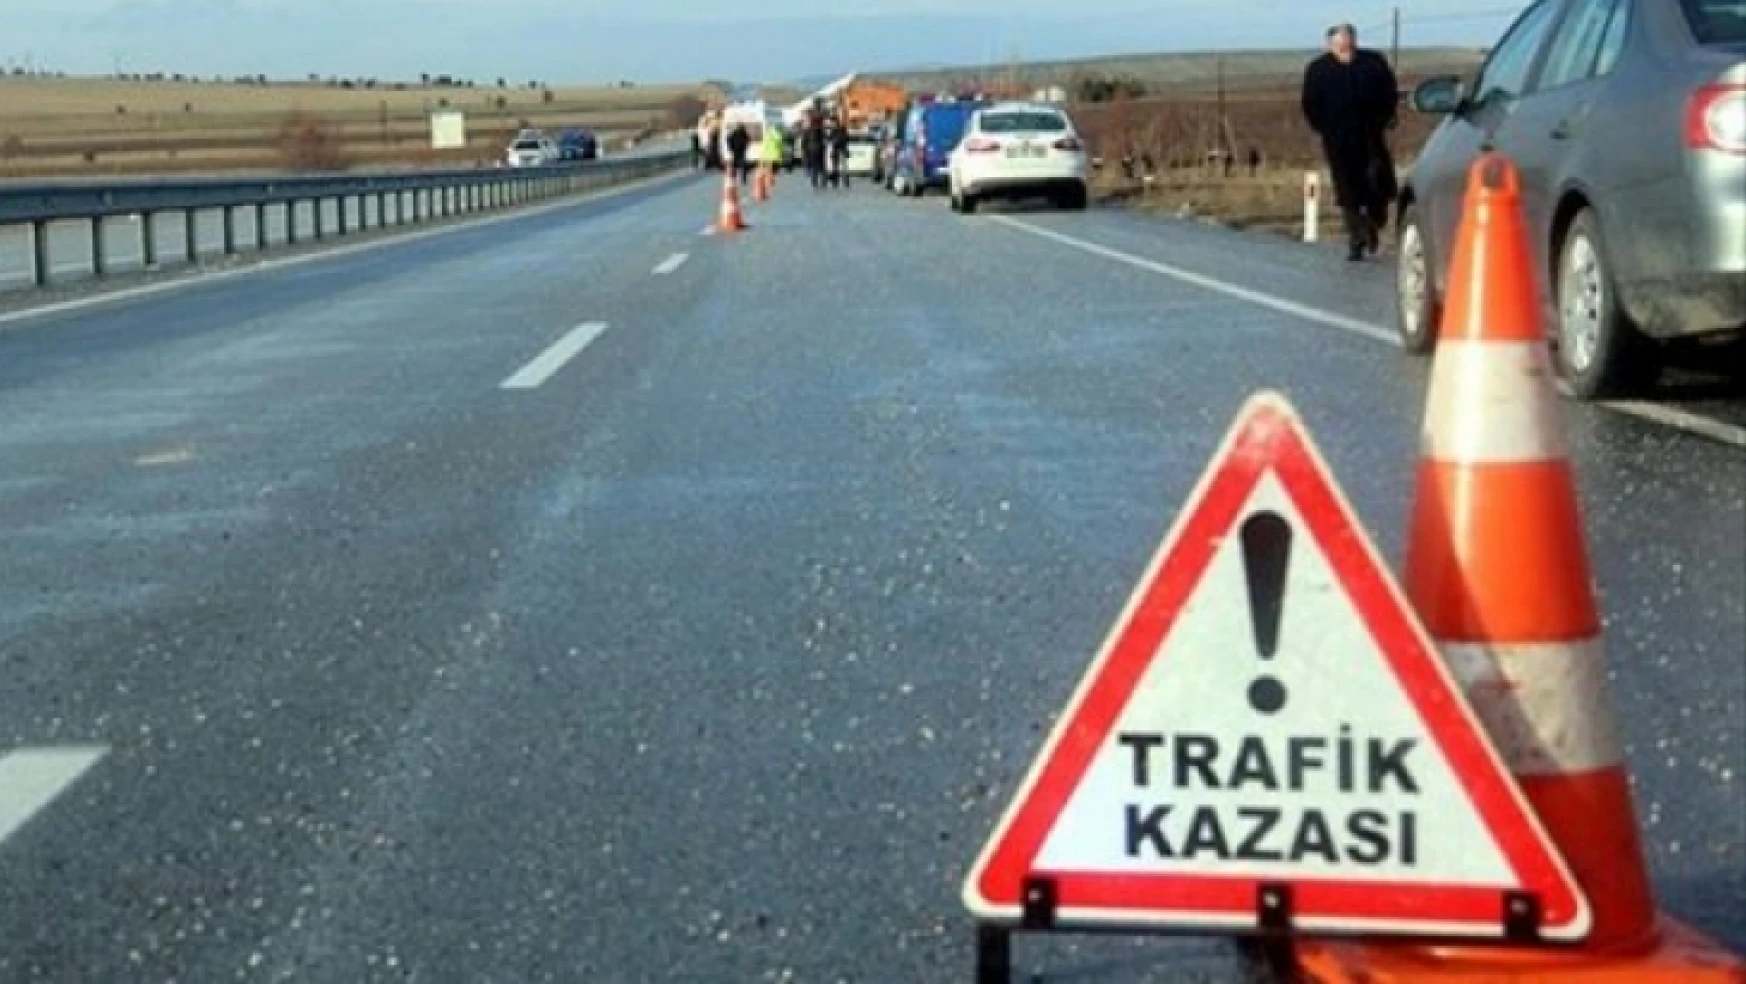 Karlı ve Kaygan Yolda Trafik Kazalarını Önlemenin Yolları